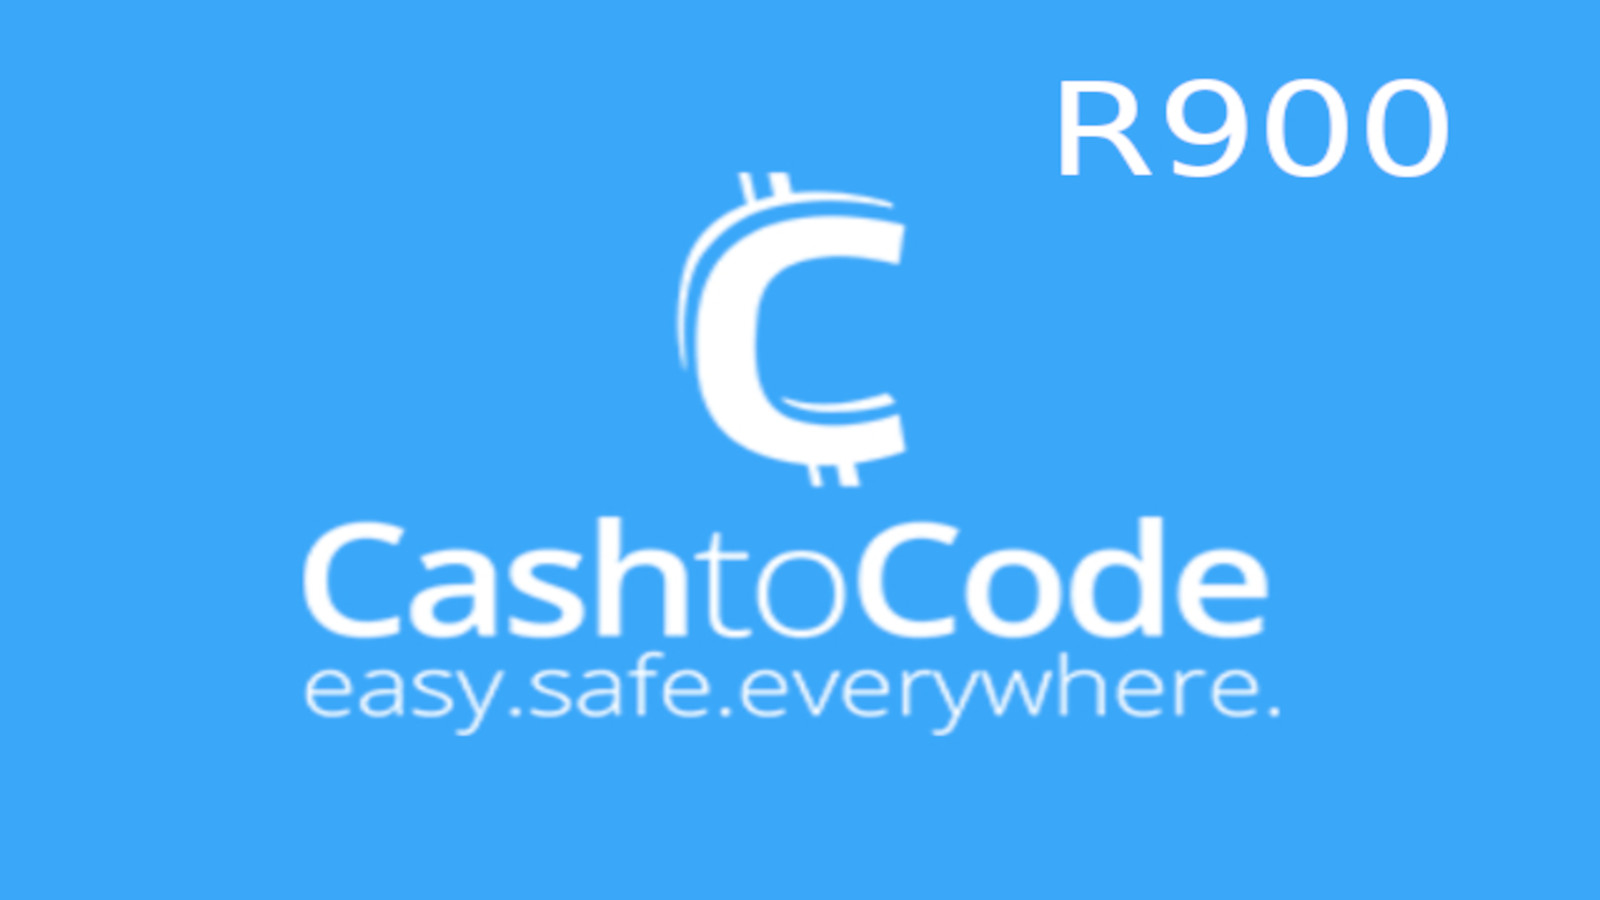 CashtoCode R900 Gift Card ZA